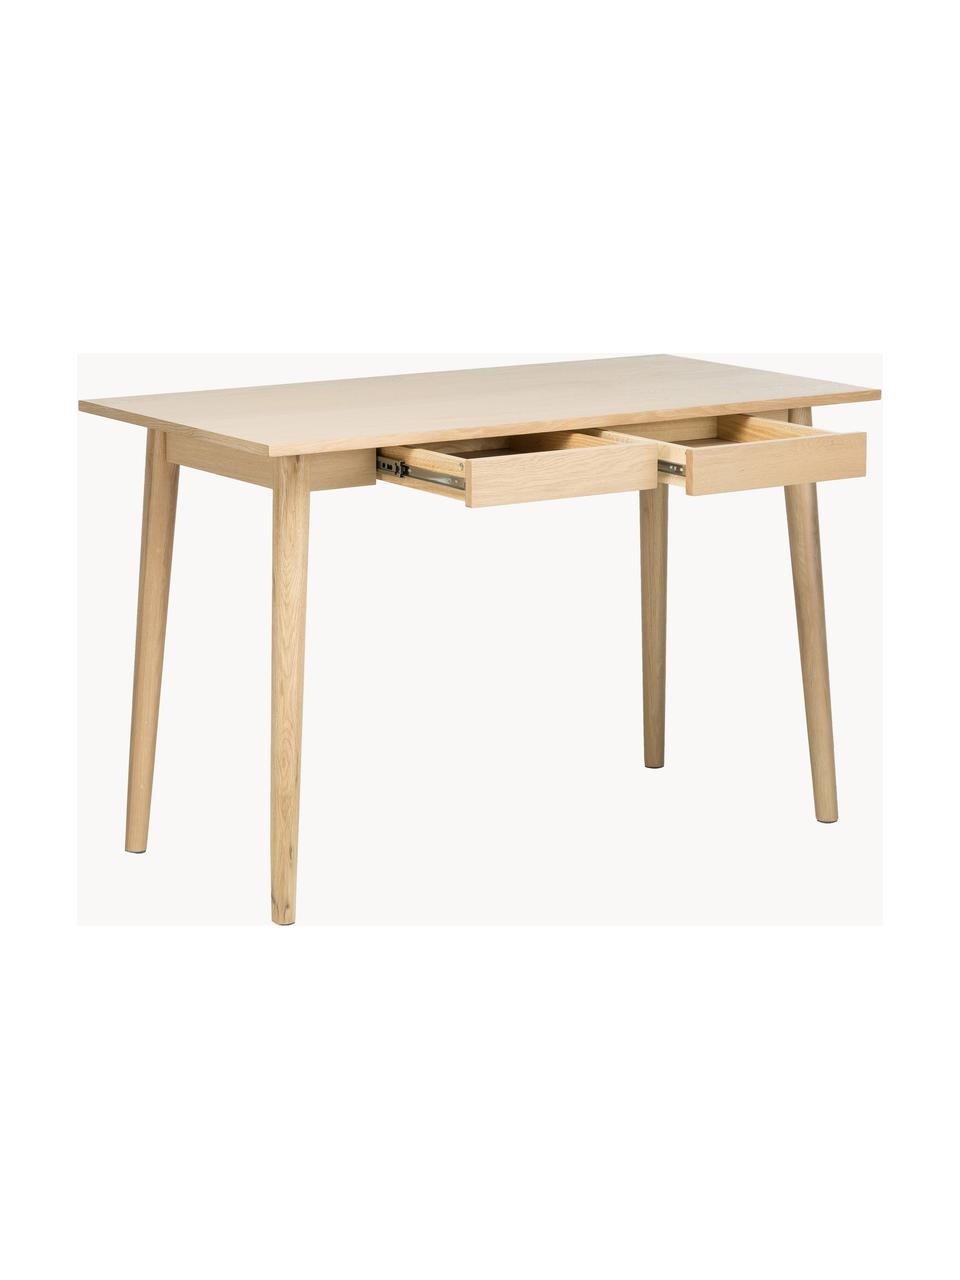 Schmaler Schreibtisch Marte aus Eiche, Tischplatte: Mitteldichte Holzfaserpla, Eichenholz, B 120 x T 60 cm